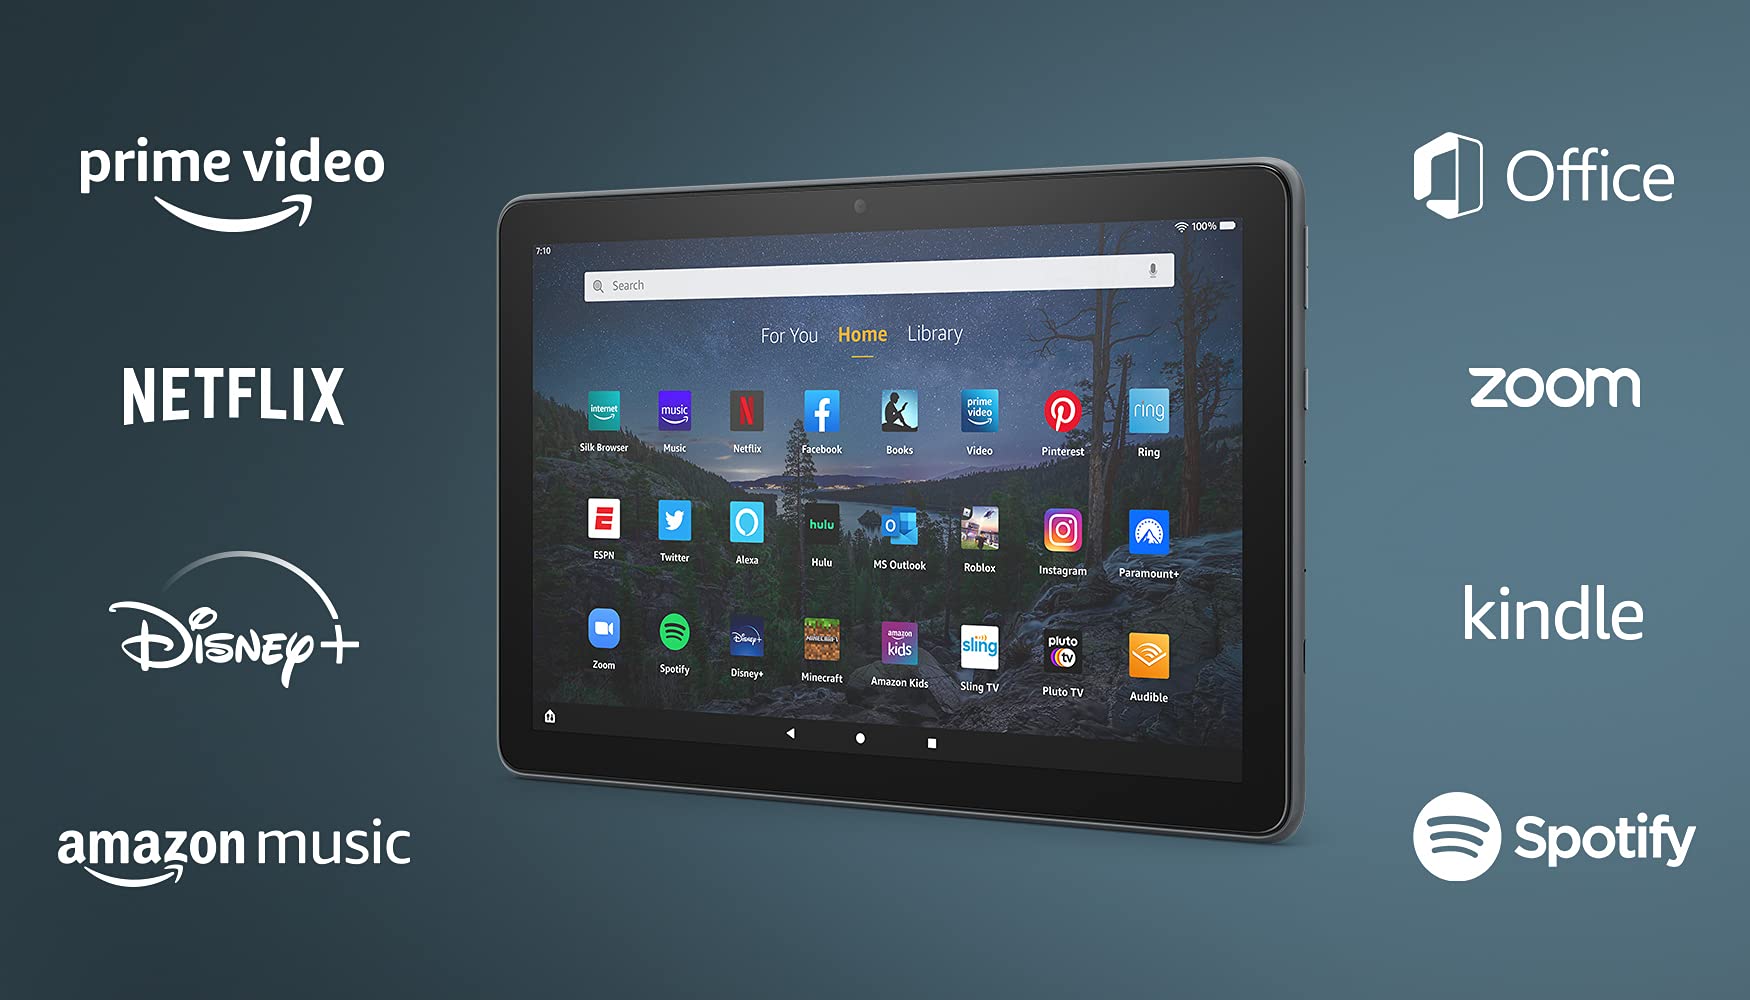 Amazon Fire HD 10 Plus tablet, 10.1", 1080p Full HD, 32 GB, (2021 release) $94.99